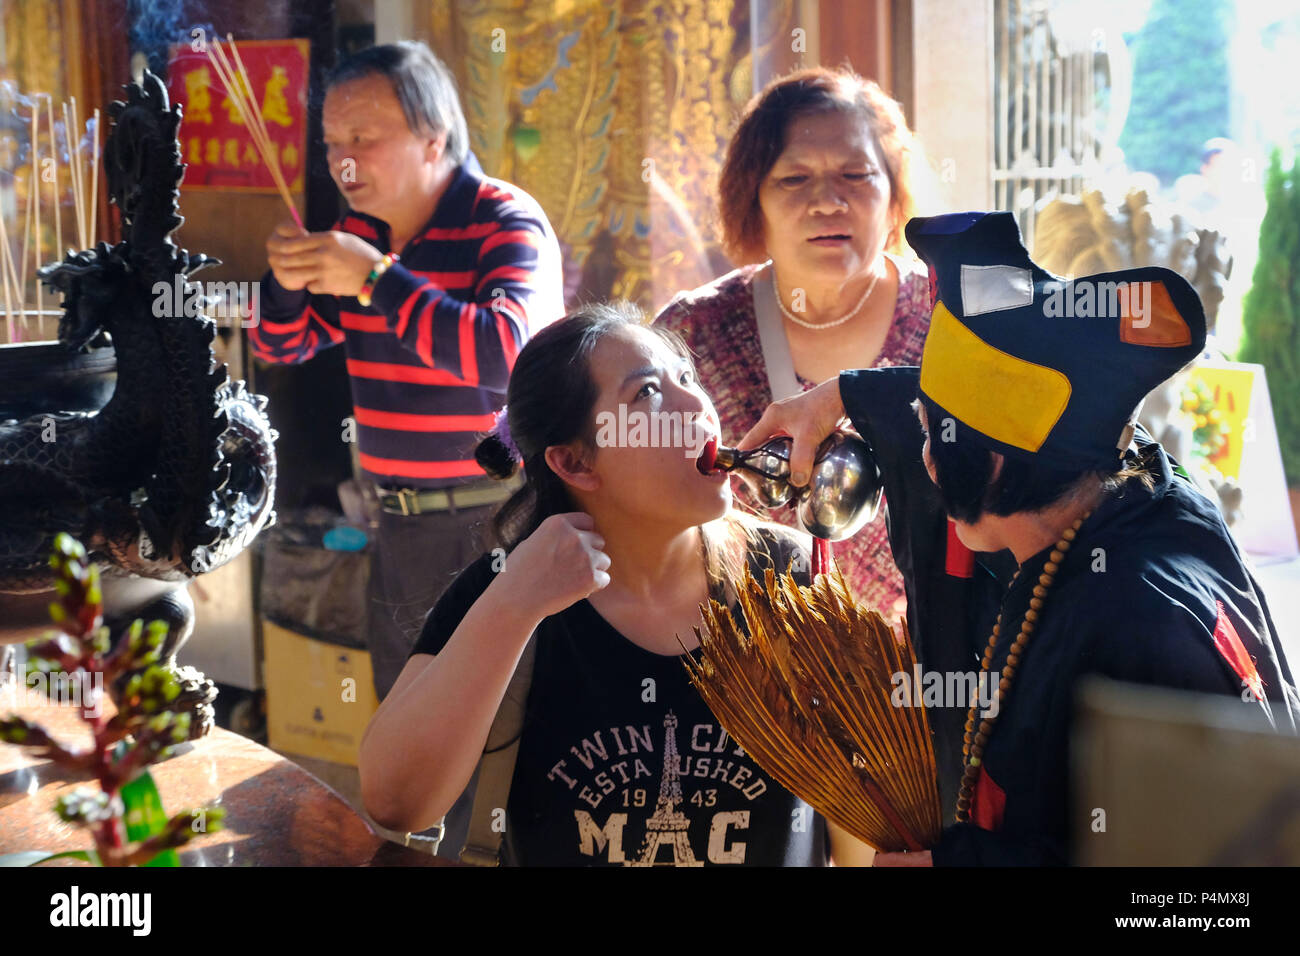 Femme prêtre (avec chapeau) au service du vin de riz au cours d'une cérémonie taoïste dans le Temple de Longyin Fanlu Canton, Taiwan - taoistischen Priesterin während eines Zeremonie Longyin im Tempel dans Fanlu Canton, Taiwan Banque D'Images